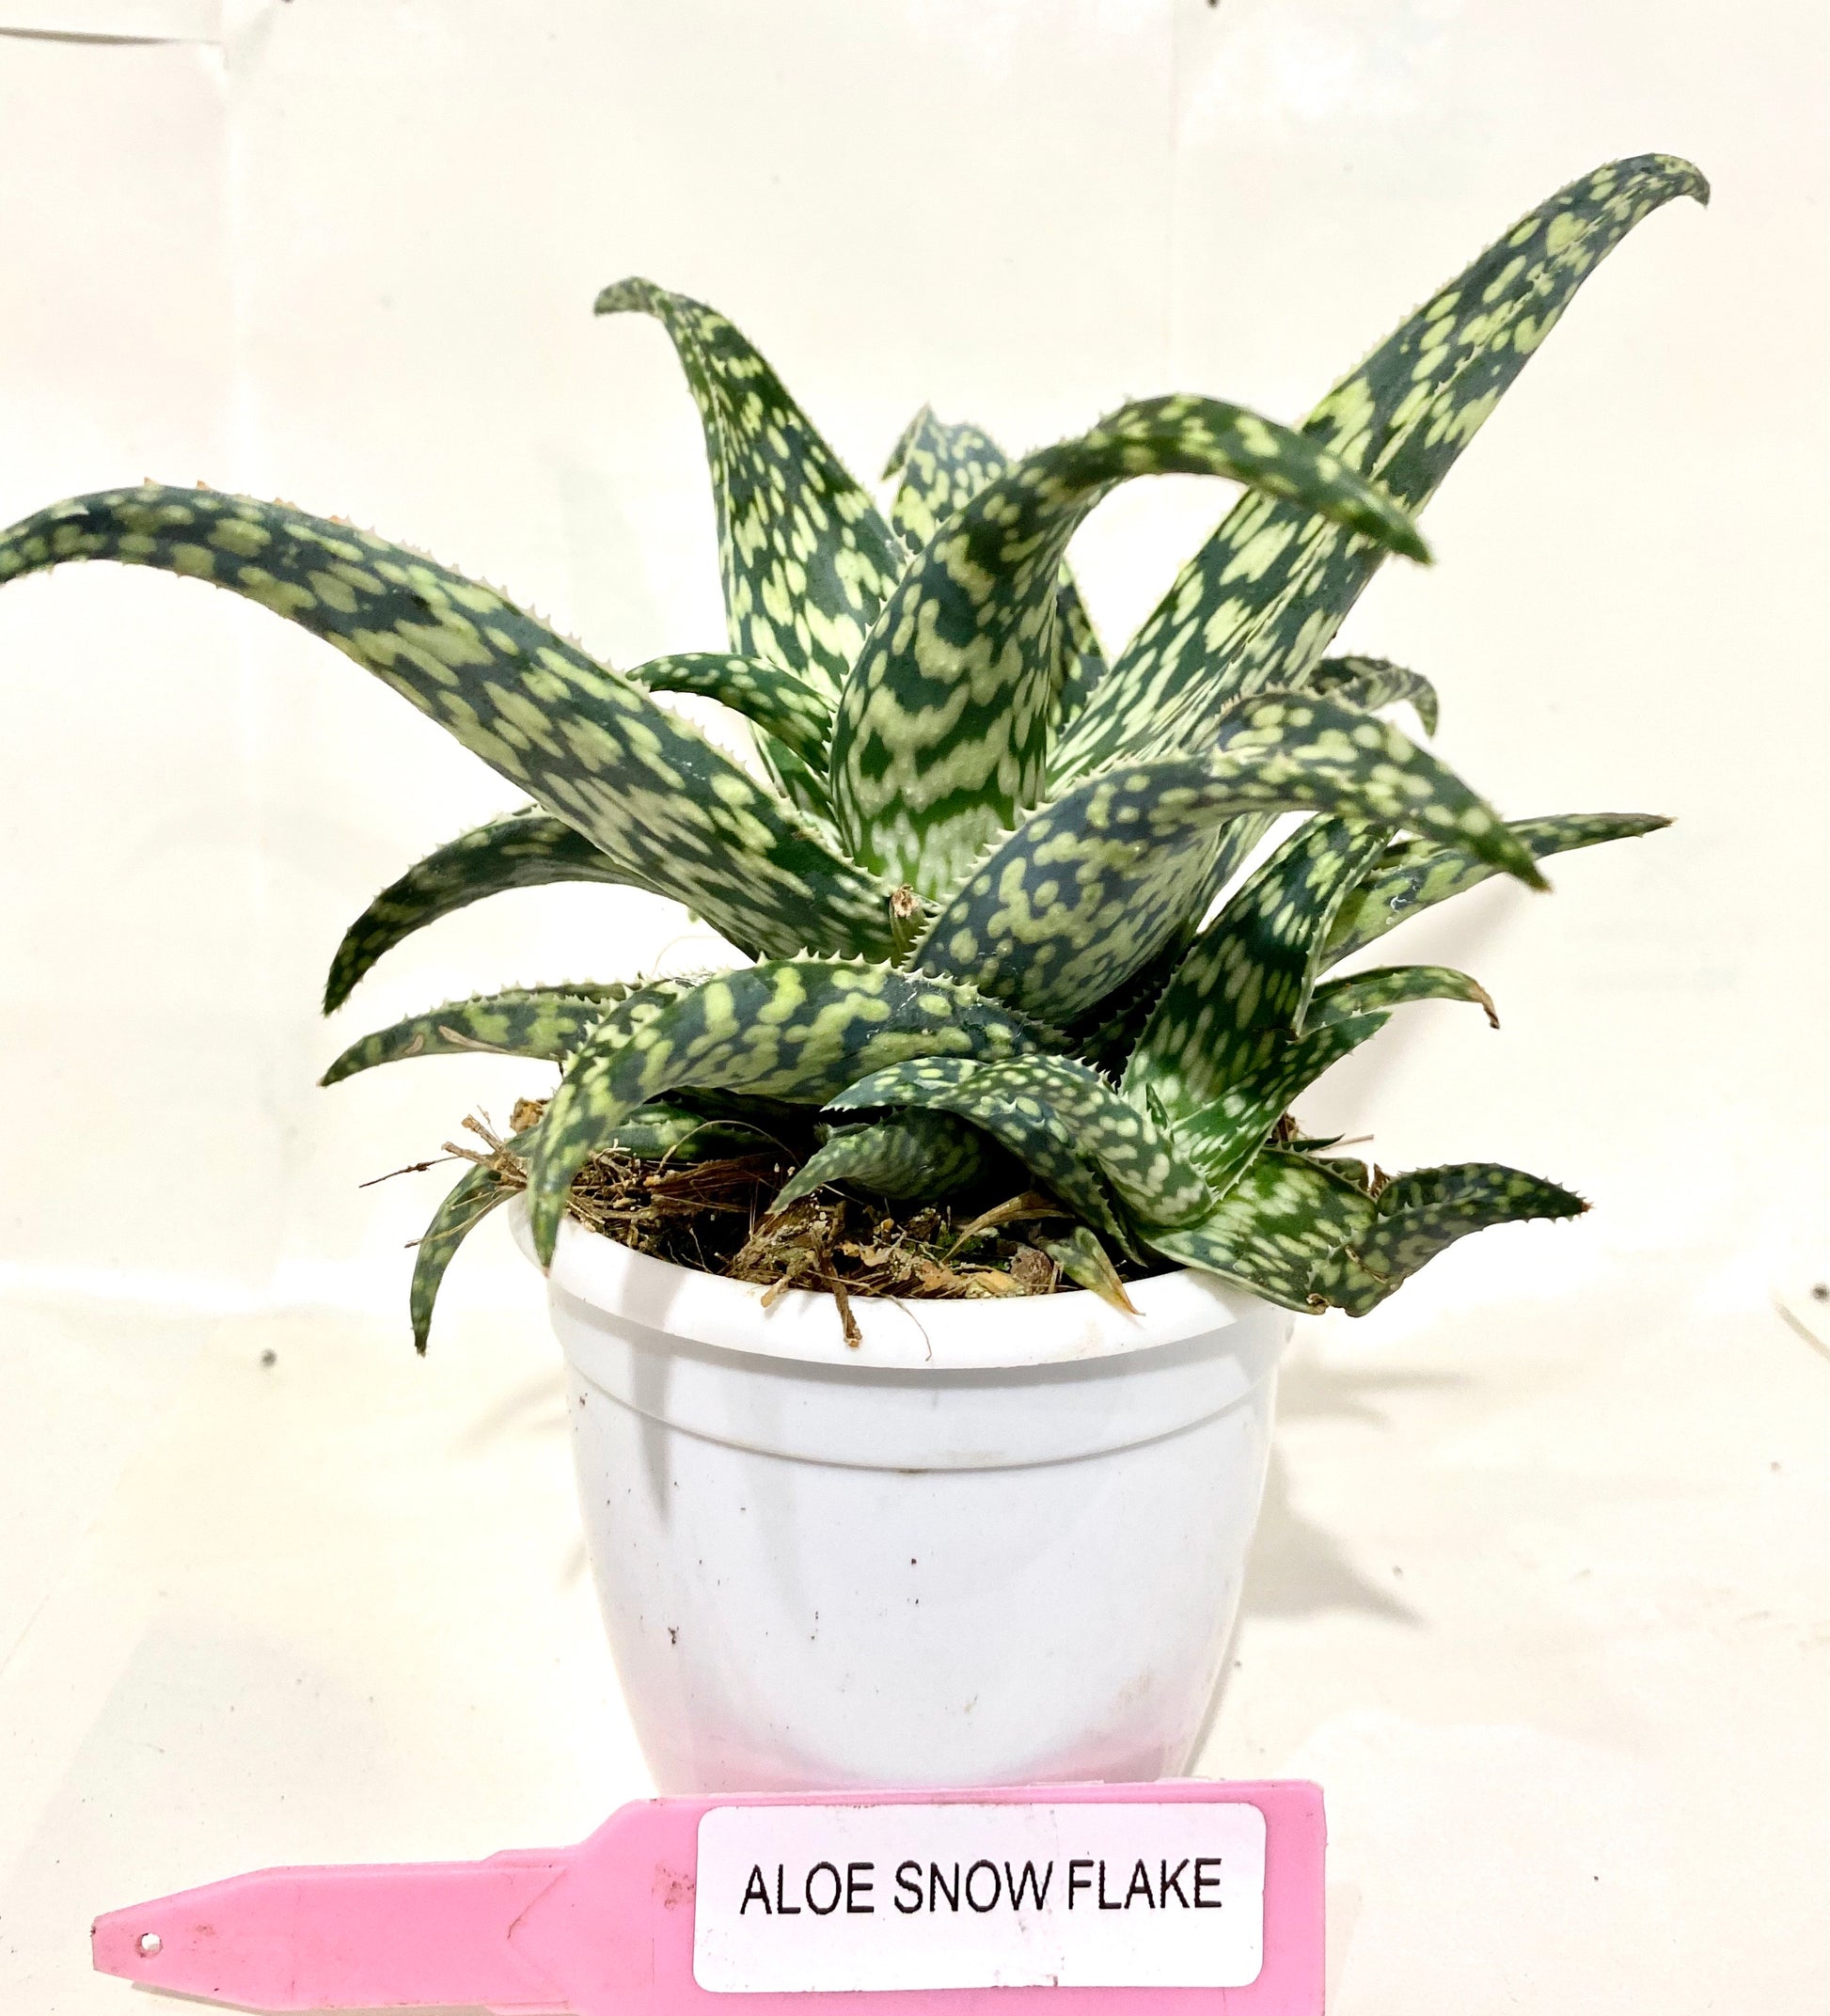 Aloe Snowflake